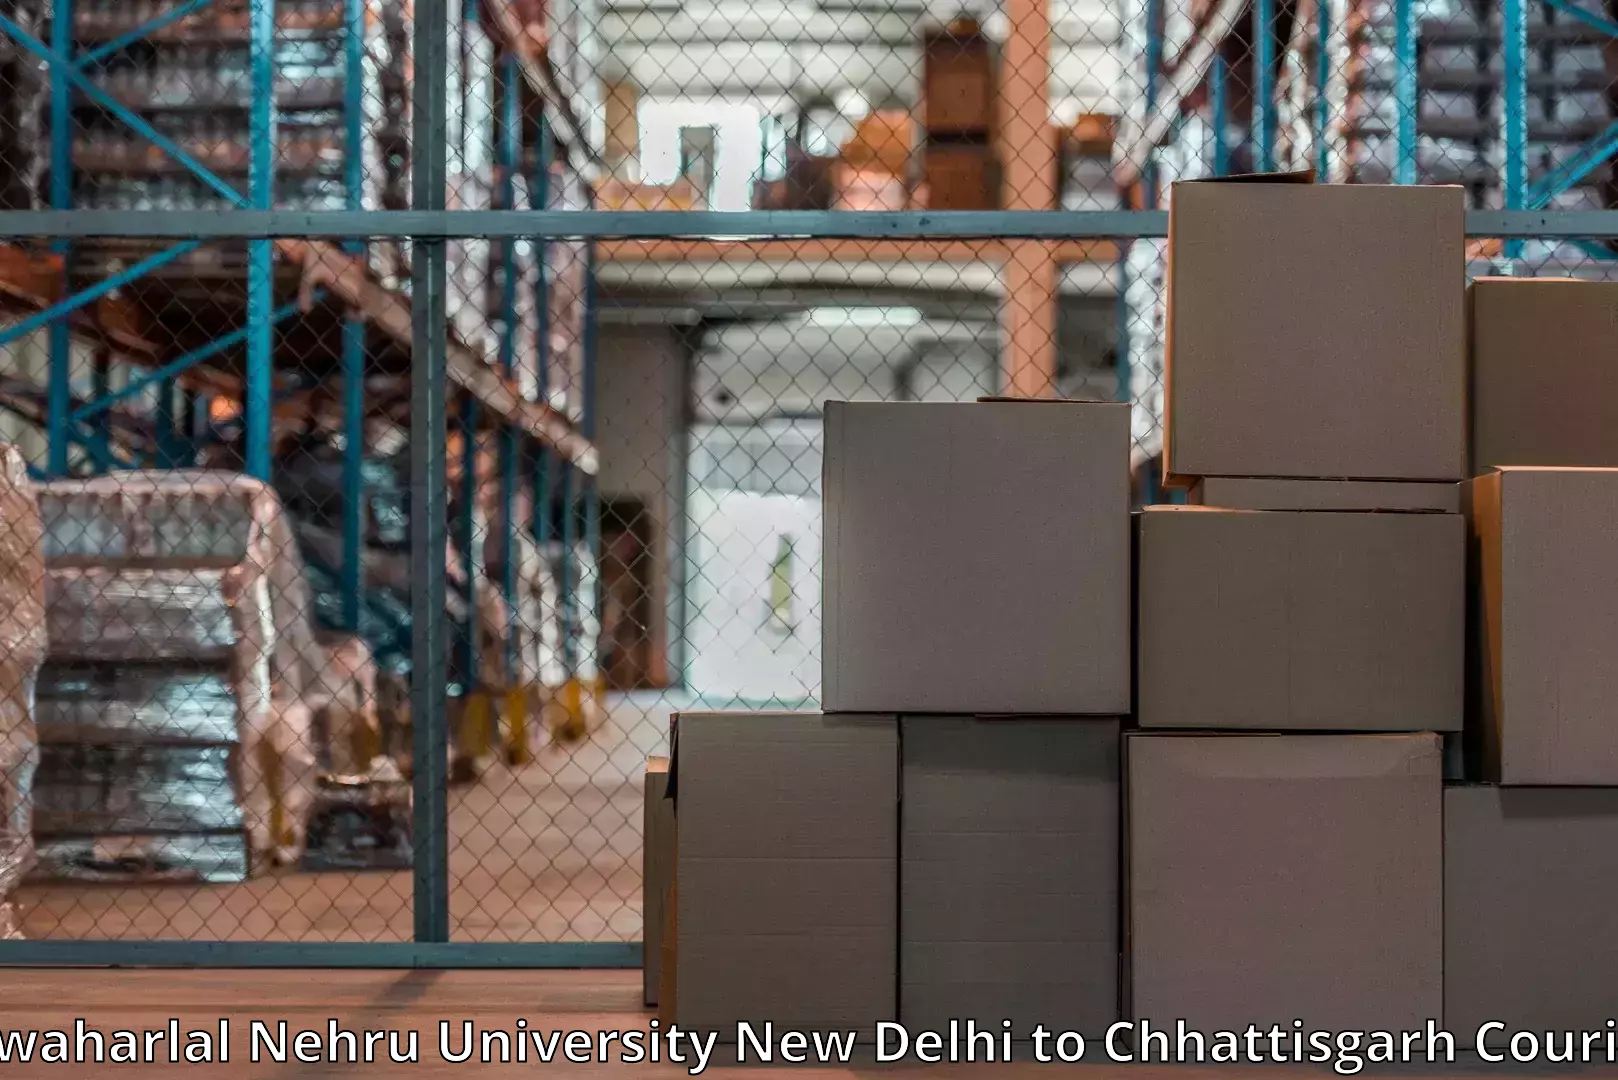 Furniture transport specialists Jawaharlal Nehru University New Delhi to Kusmi